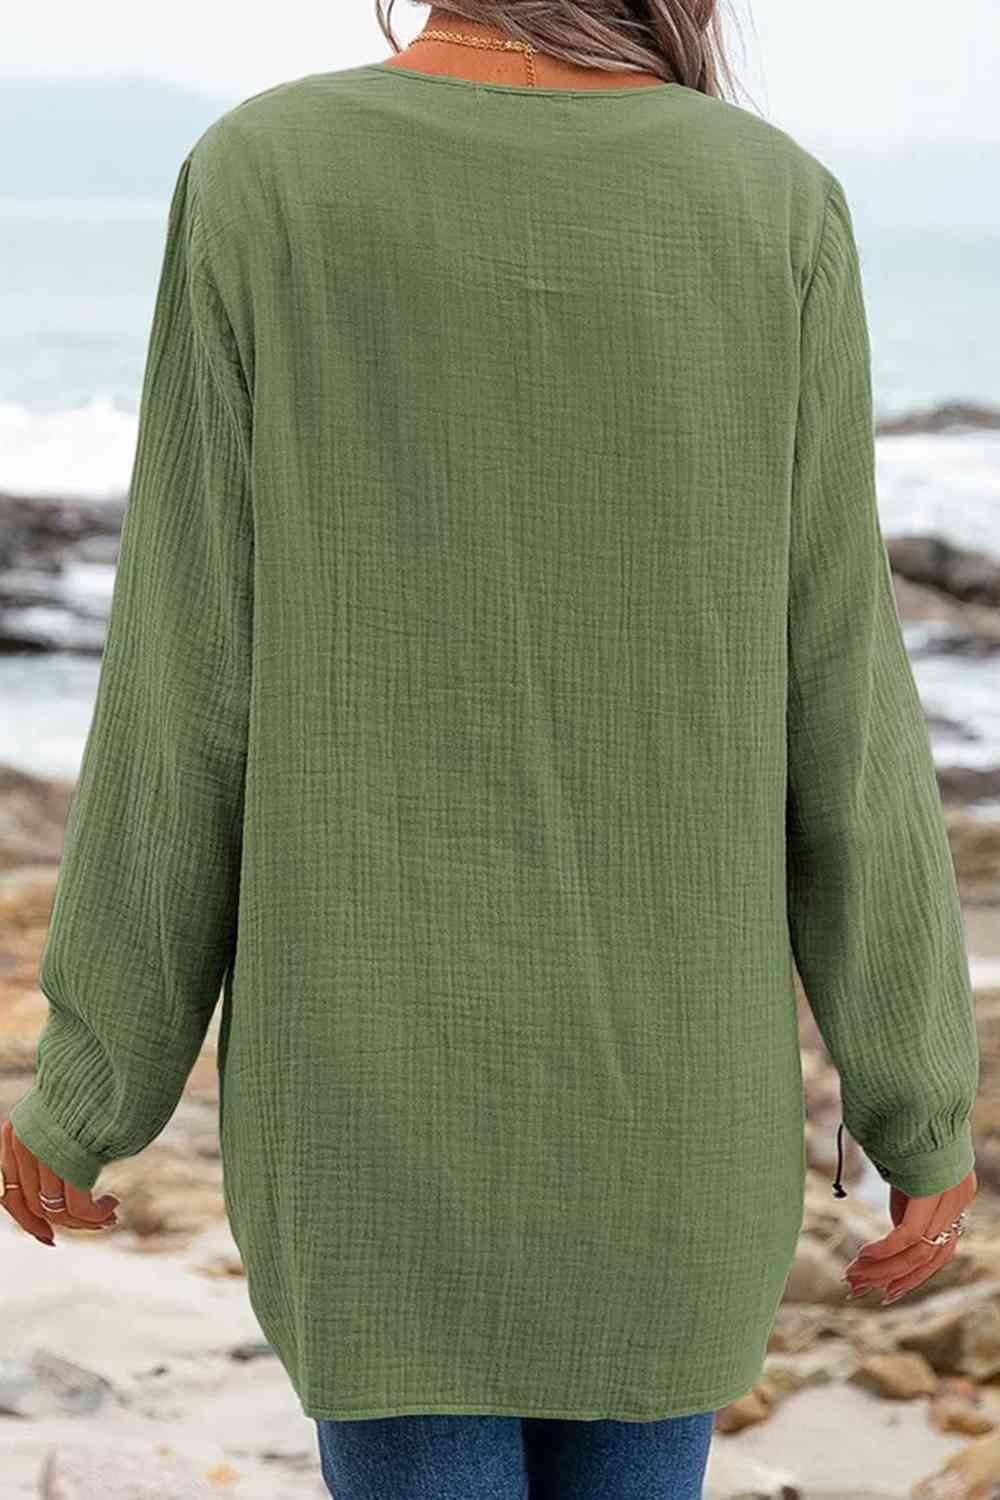 a woman standing on a beach wearing a green shirt